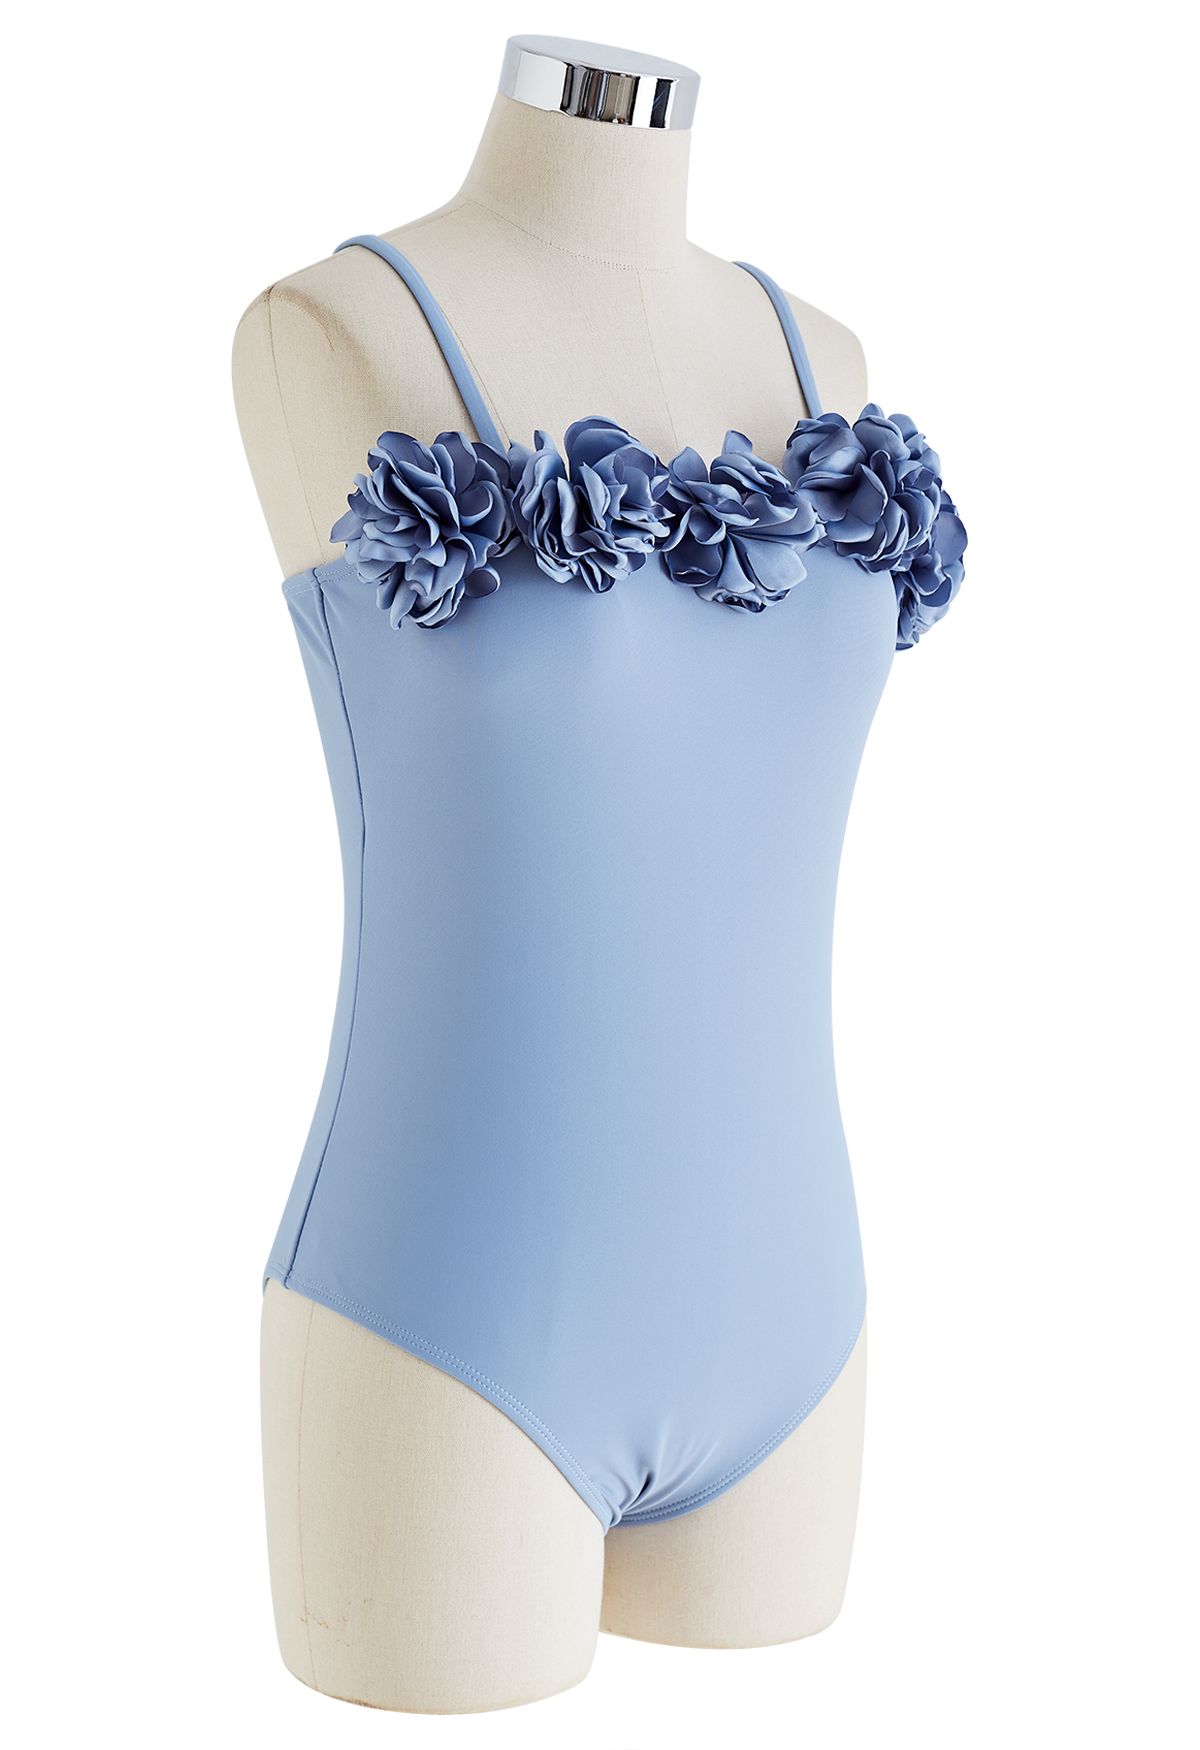 ملابس السباحة Ocean Bloom من قطعة واحدة